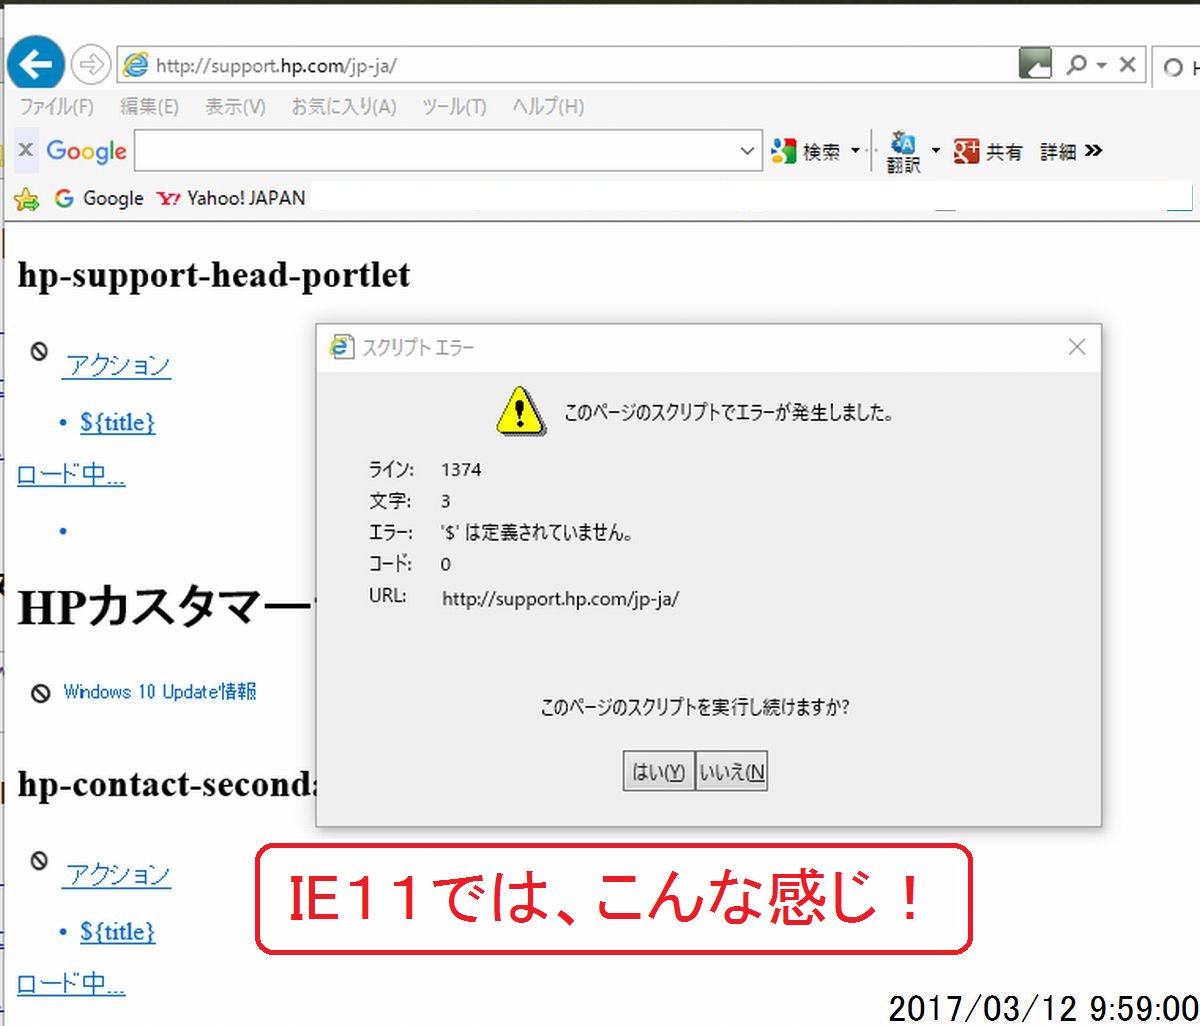 Pccan 中野パソコン修理屋さん A Twitter 今朝 パソコン修理の作業で 日本hpのサポートページを開いた所 サポートページのカテゴリのみレイアウト リンク異常 Ieで確認した所 スクリプトエラー表示 Javaを削除し 正常表示 事無きを得ました 自分のpcトラブル